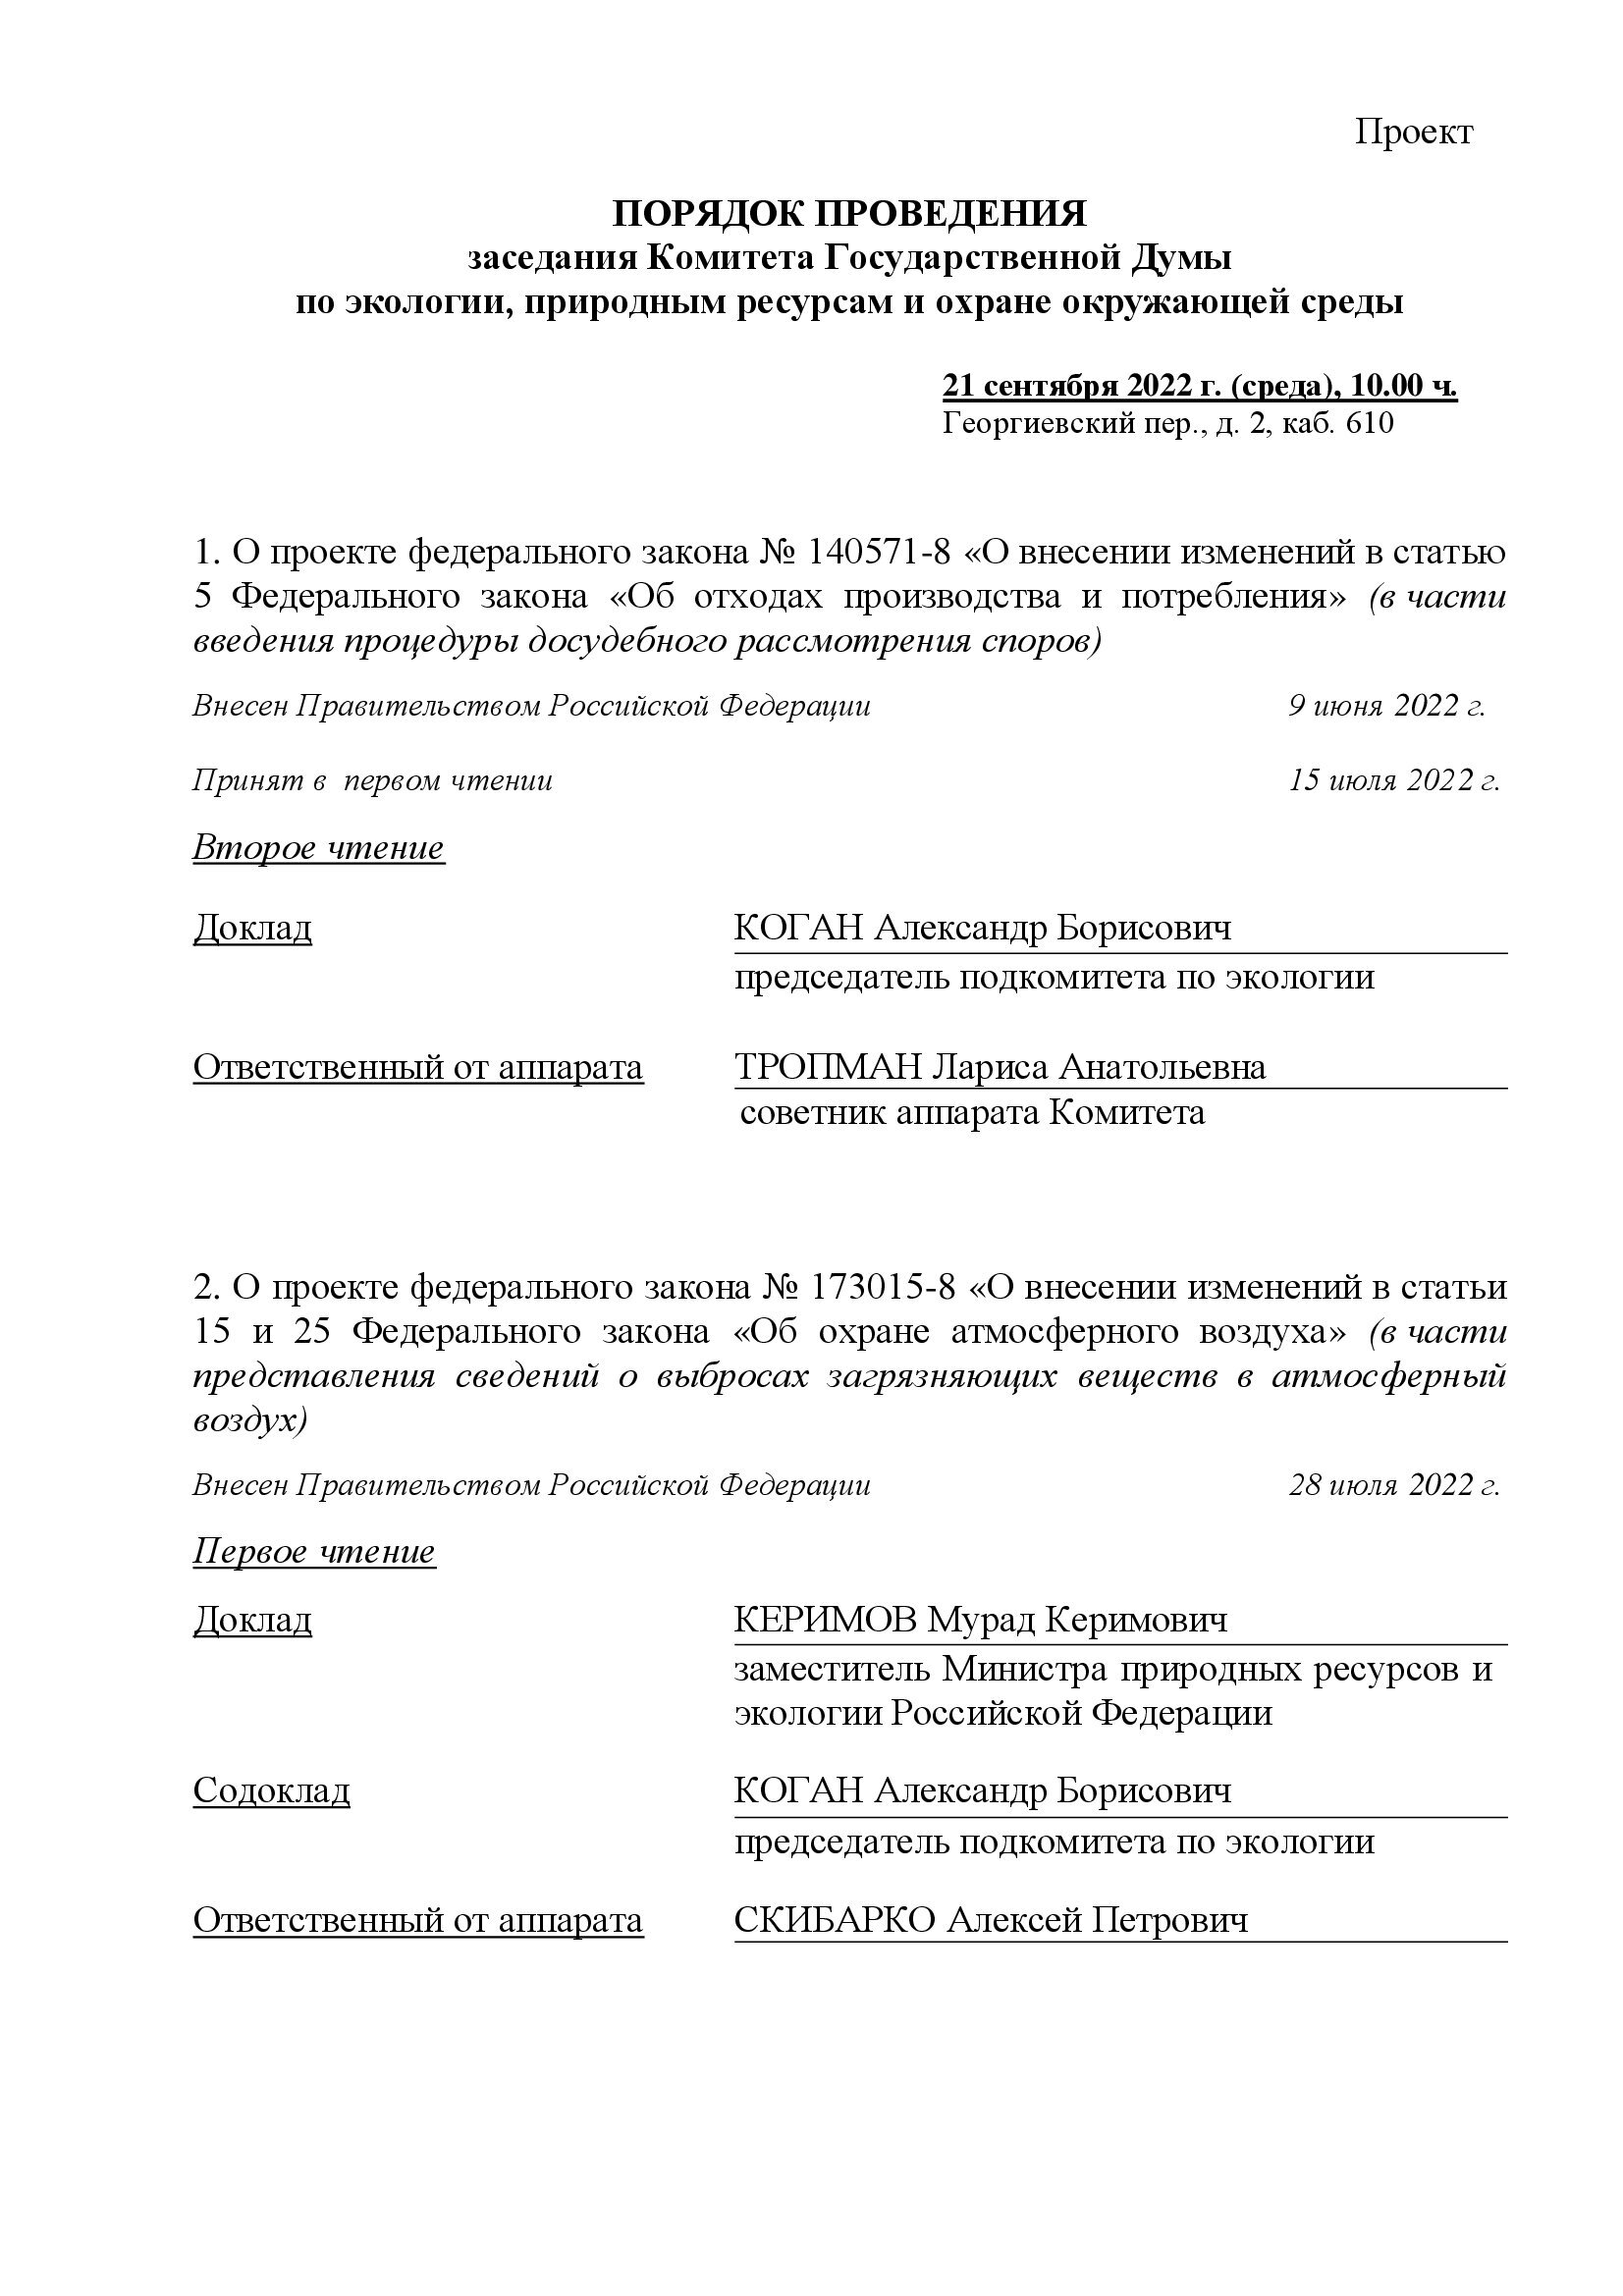 Опубликован документ о порядке проведения заседания Комитета Государственной Думы  по экологии, природным ресурсам и охране окружающей среды - фото 1